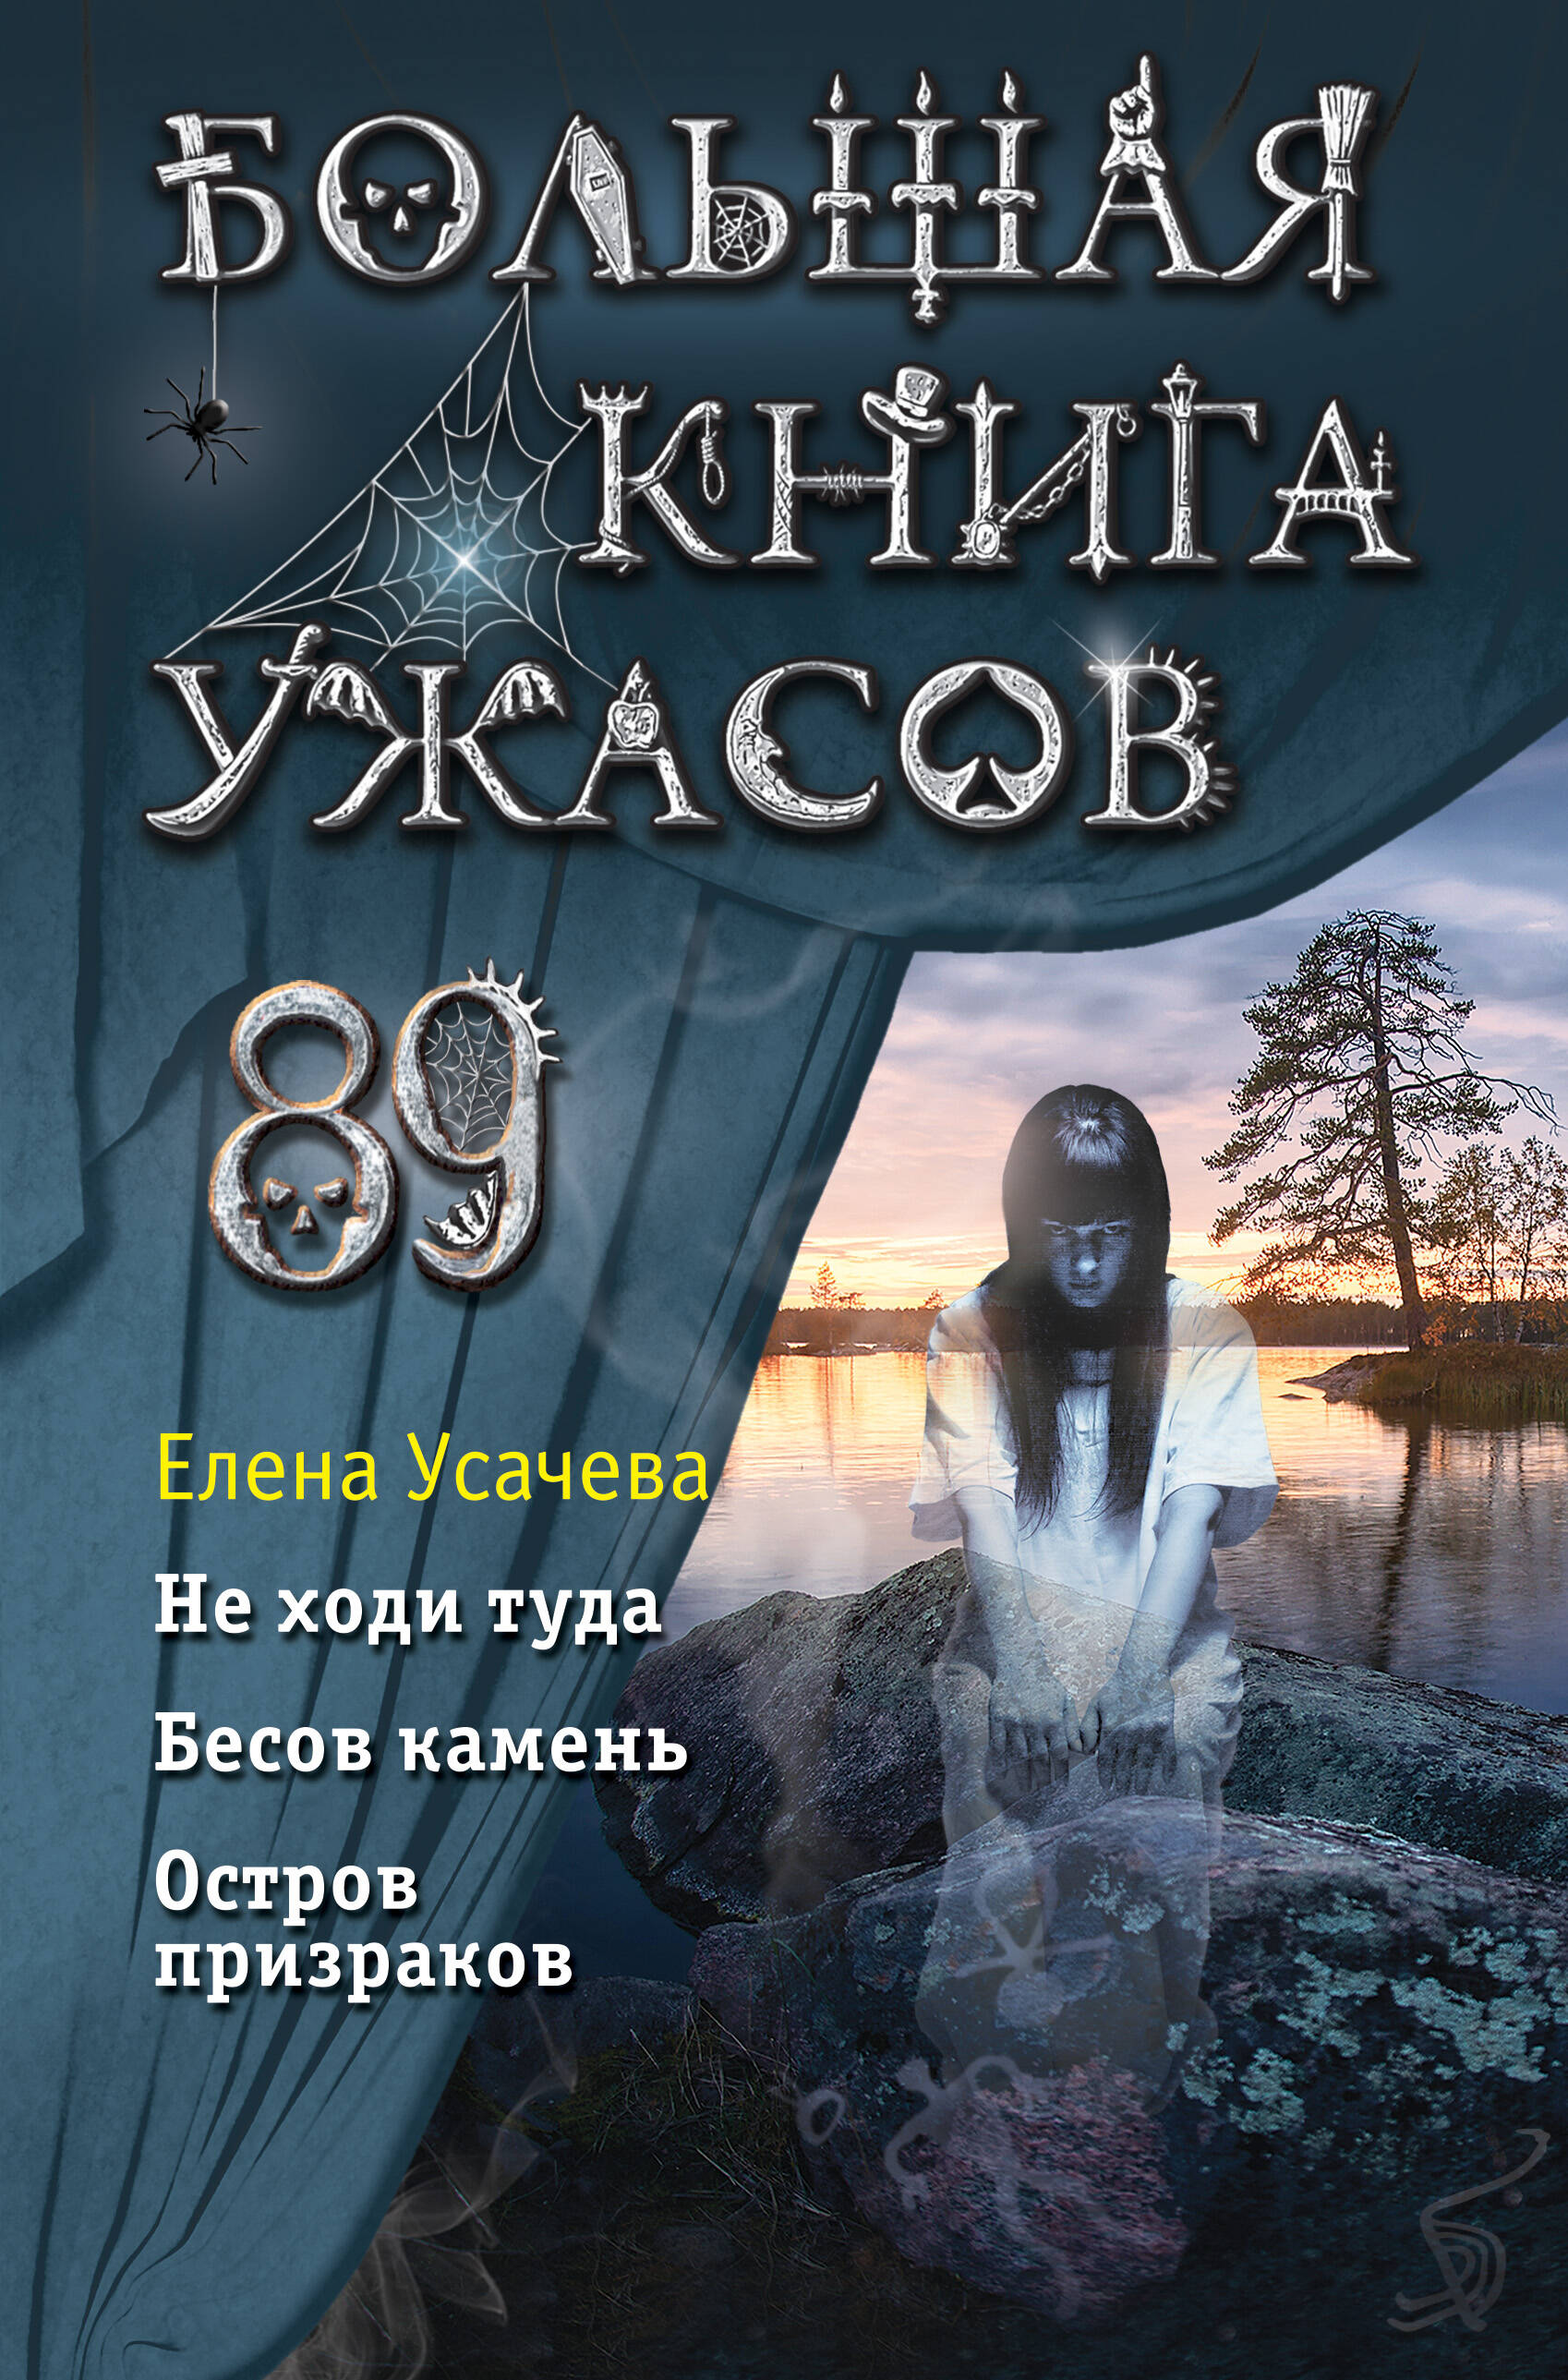 Усачева Елена Александровна - Большая книга ужасов 89